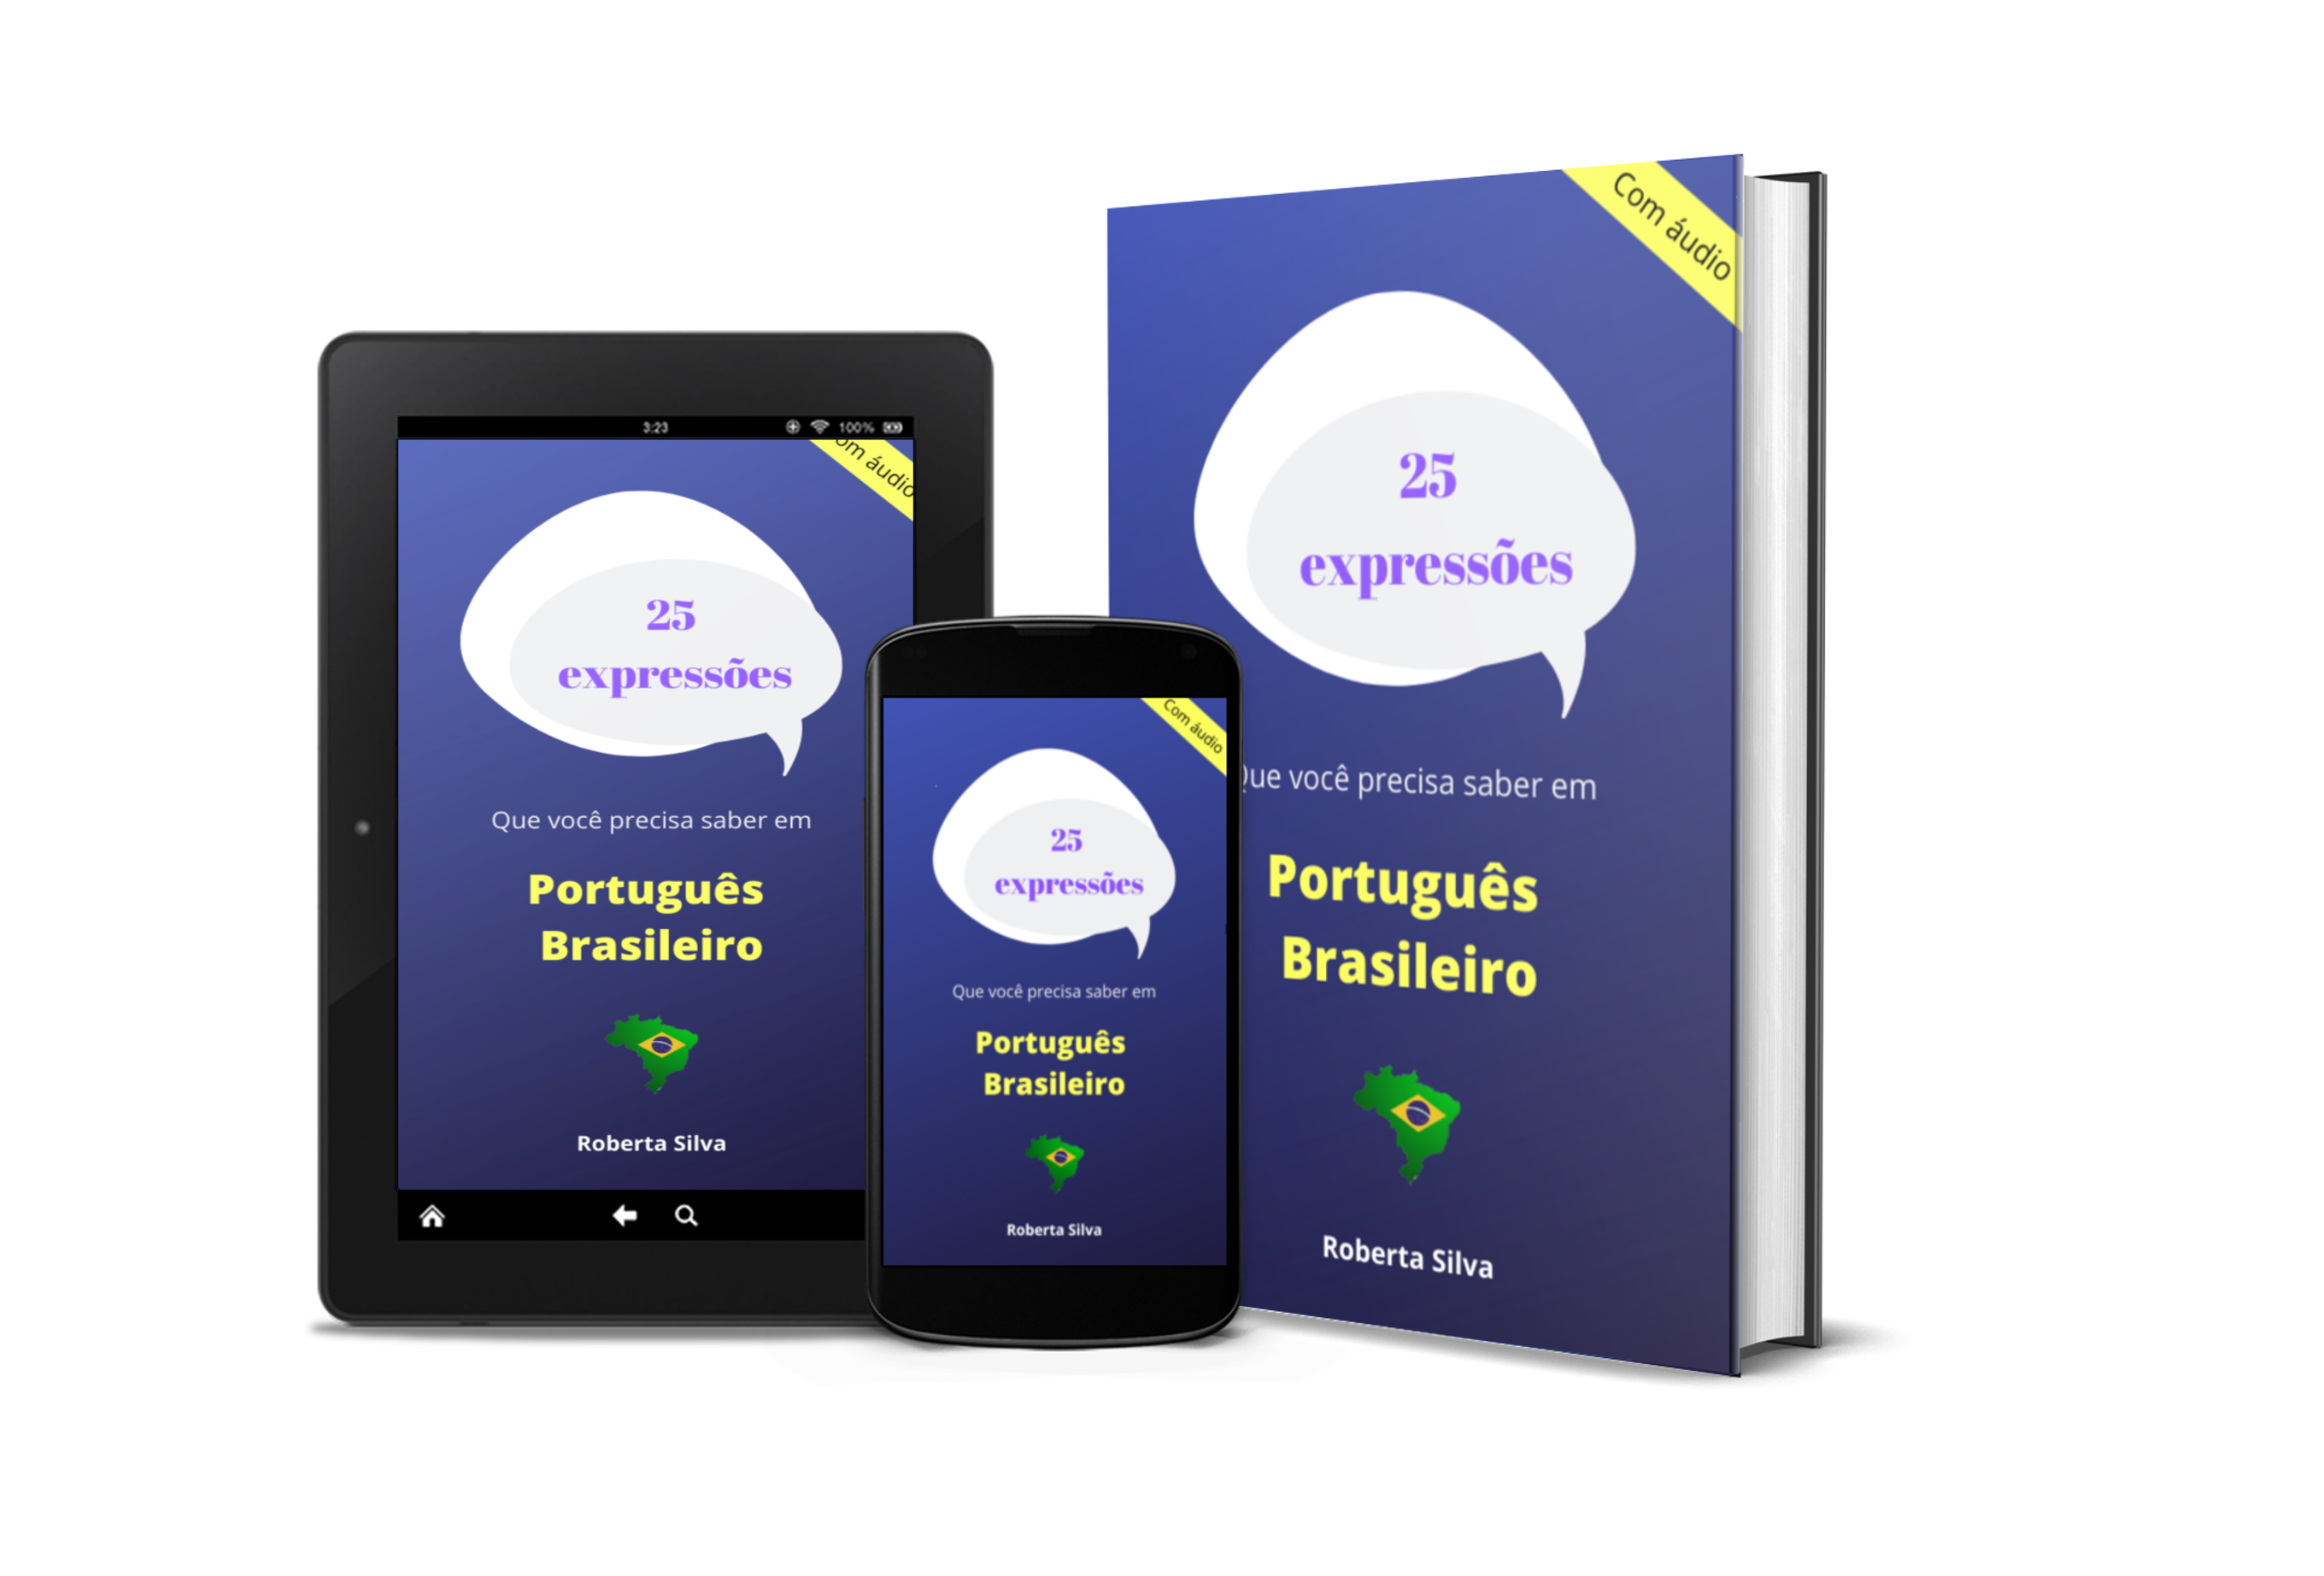 Ebook: 25 expressões que você precisa saber em português brasileiro